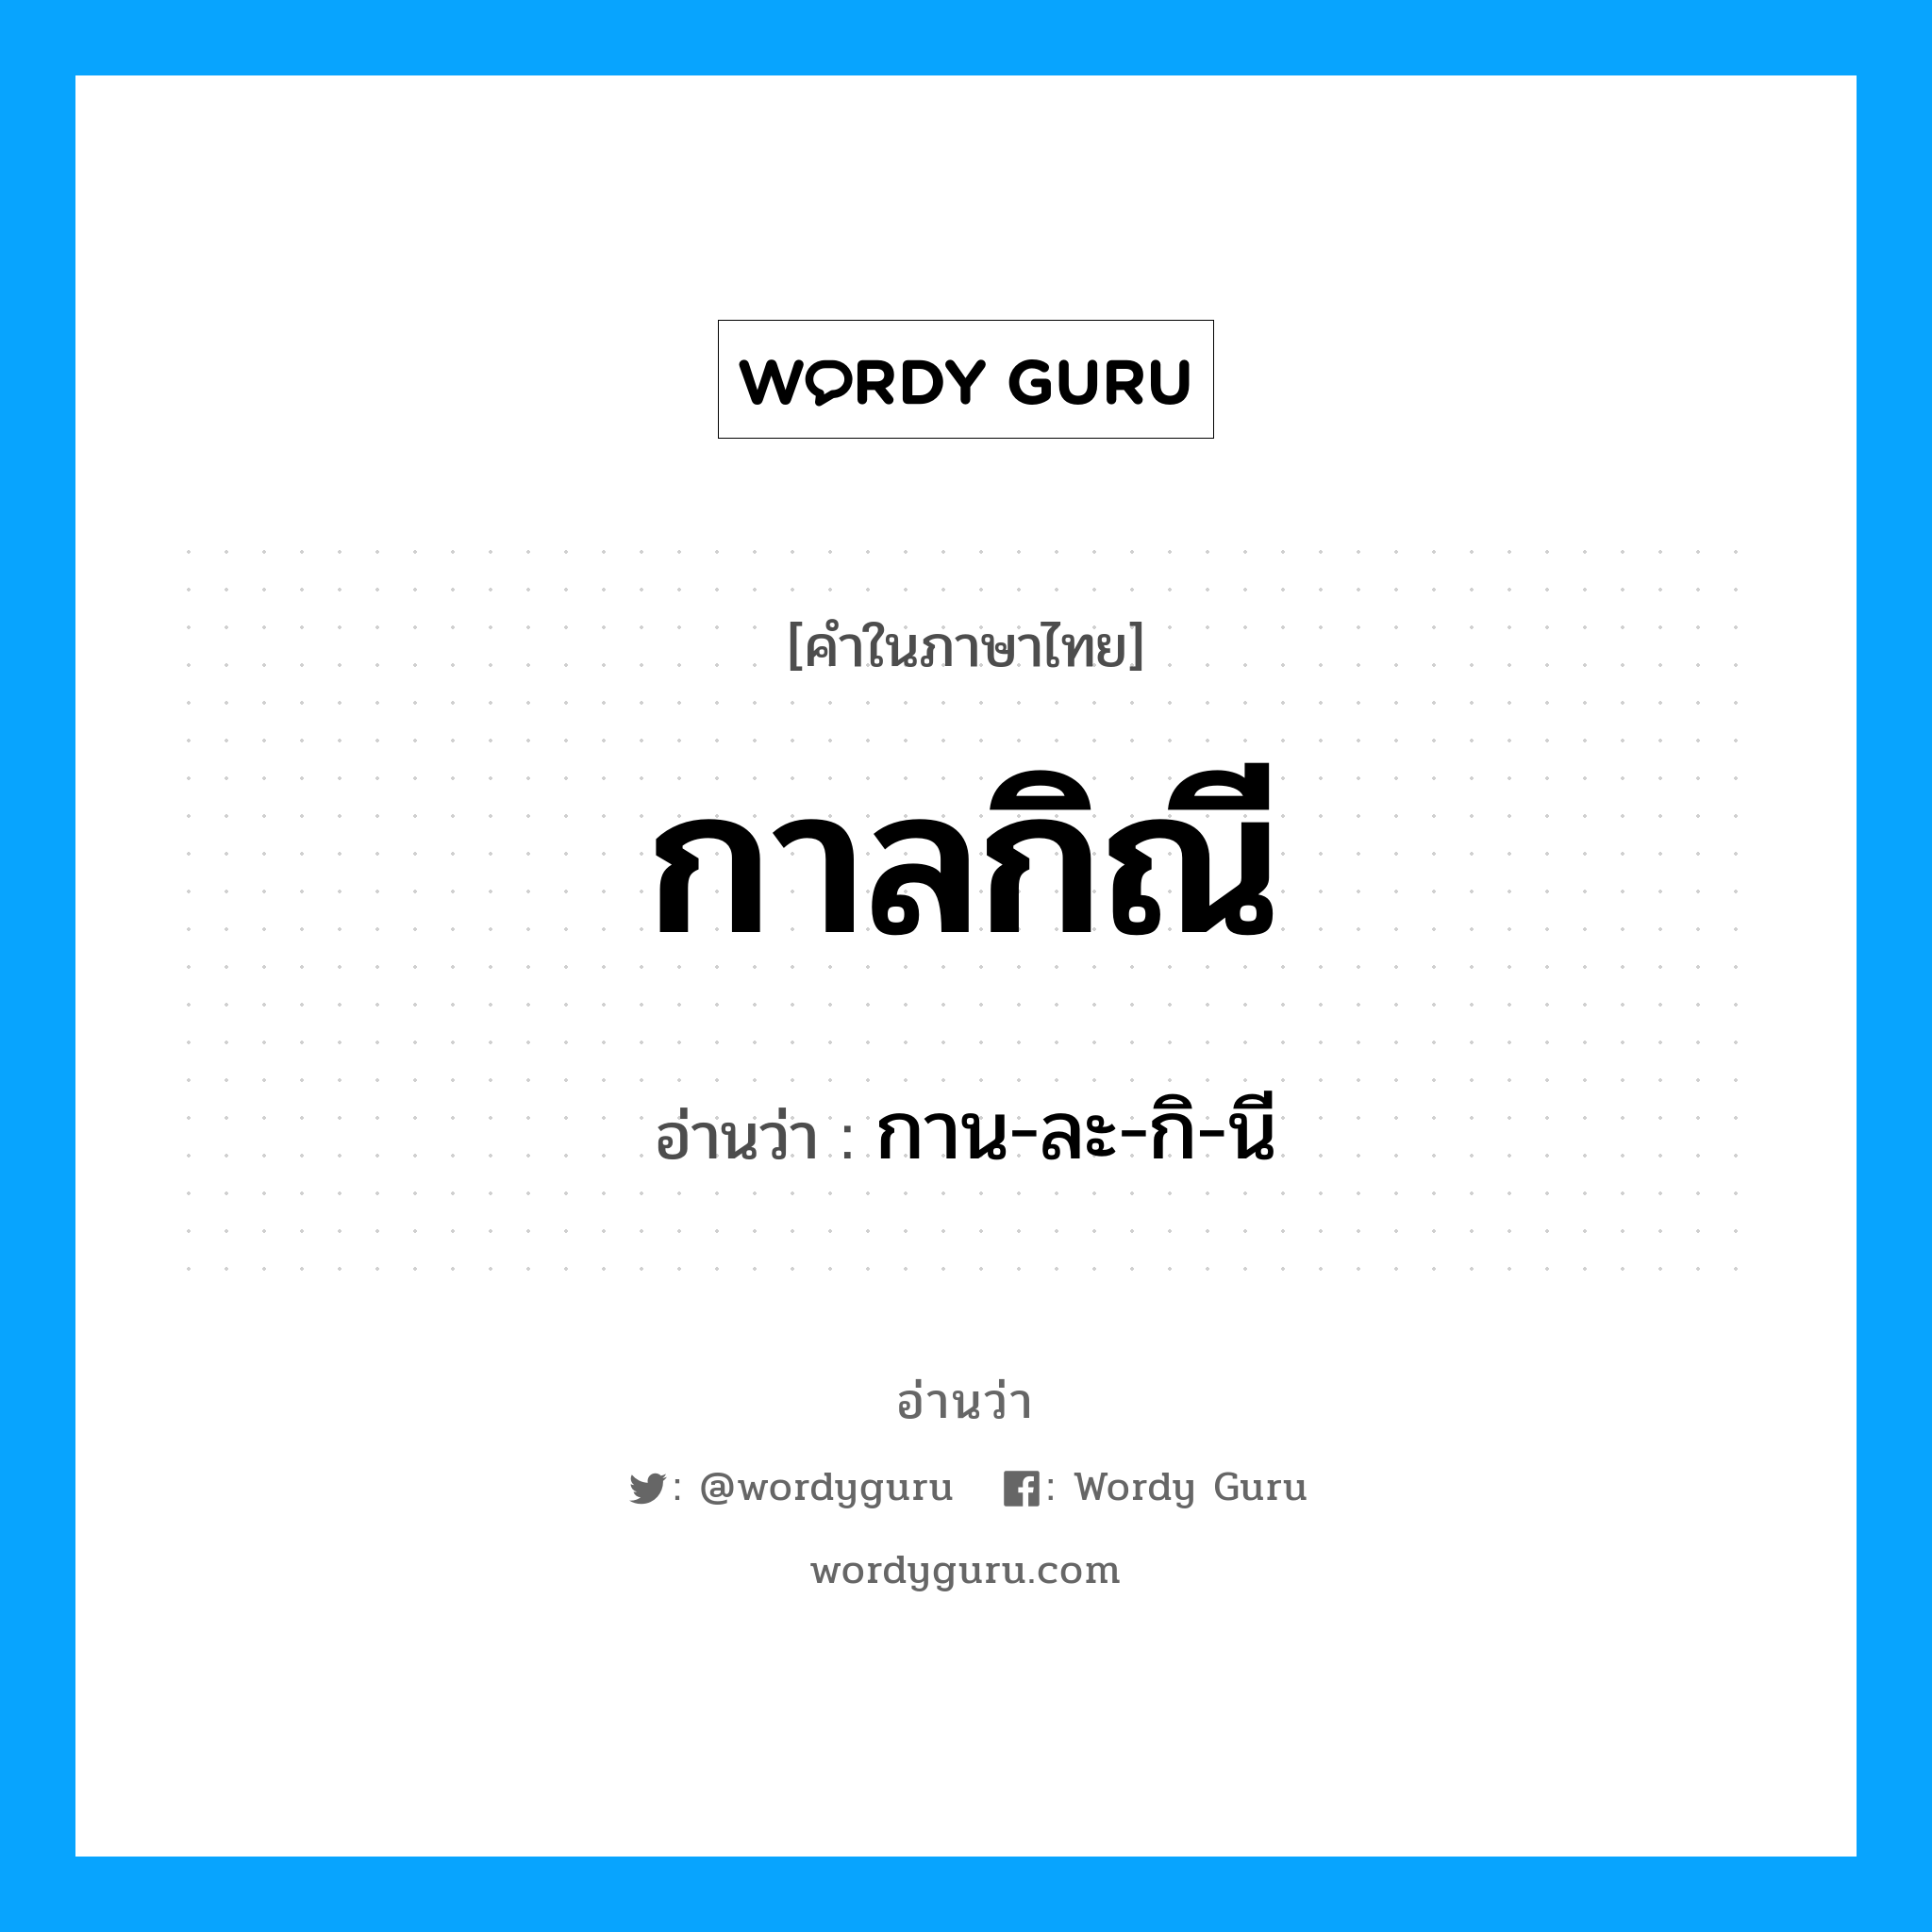 กาน-ละ-กิ-นี เป็นคำอ่านของคำไหน?, คำในภาษาไทย กาน-ละ-กิ-นี อ่านว่า กาลกิณี